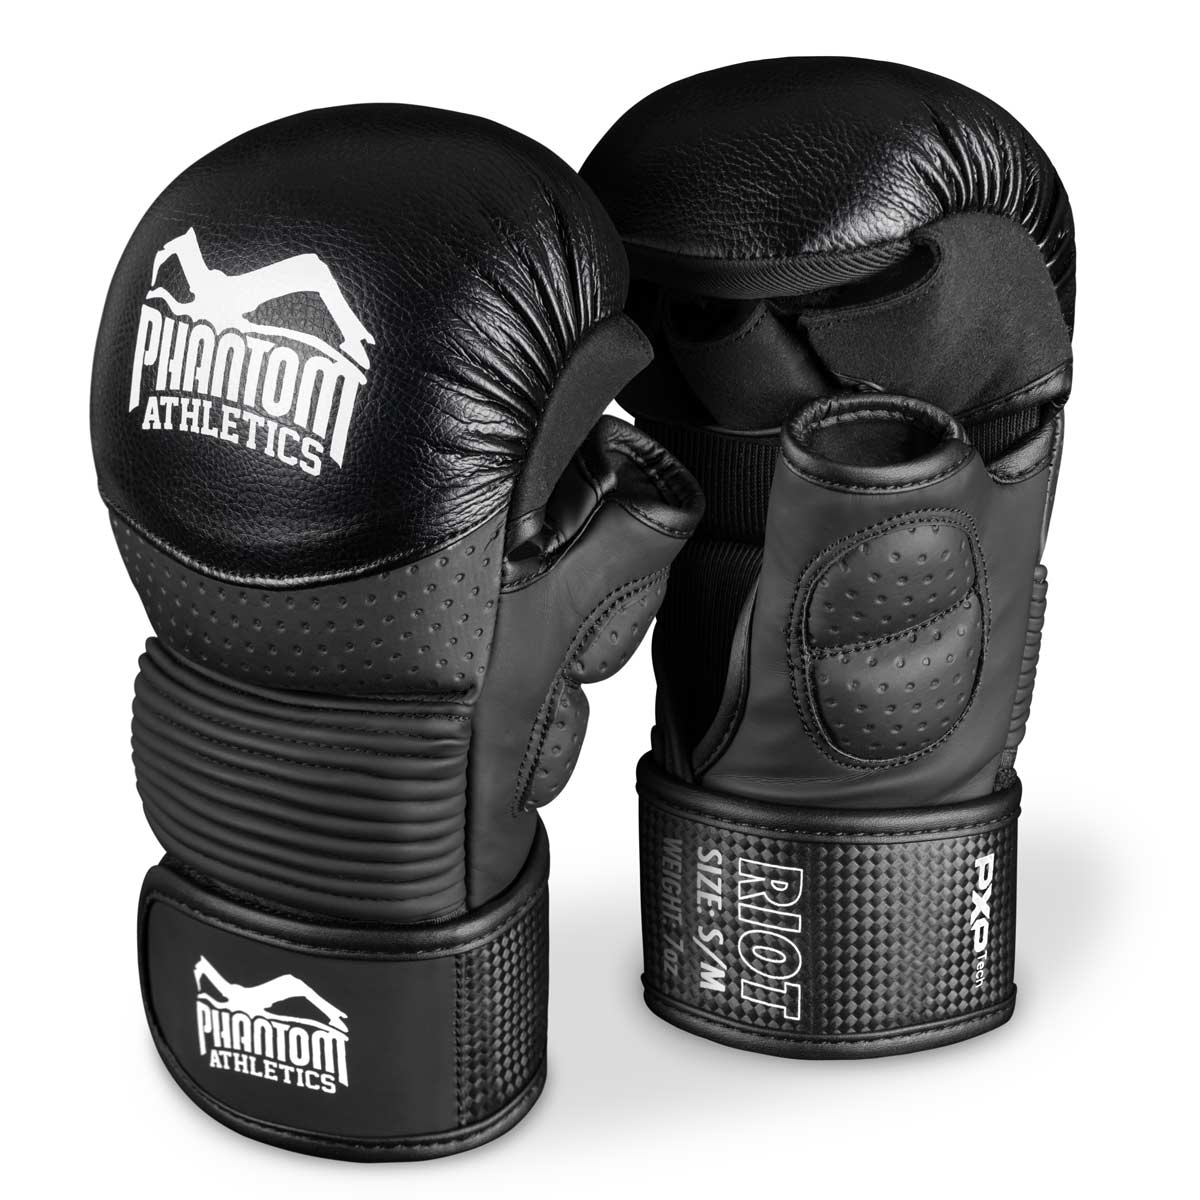 Les gants de sparring Phantom RIOT PRO MMA. Idéal pour vos entraînements d'arts martiaux et compétitions amateurs. Gants MMA de la plus haute qualité et les plus sûrs du marché. Ajustement parfait et qualité supérieure pour l'entraînement et le sparring.